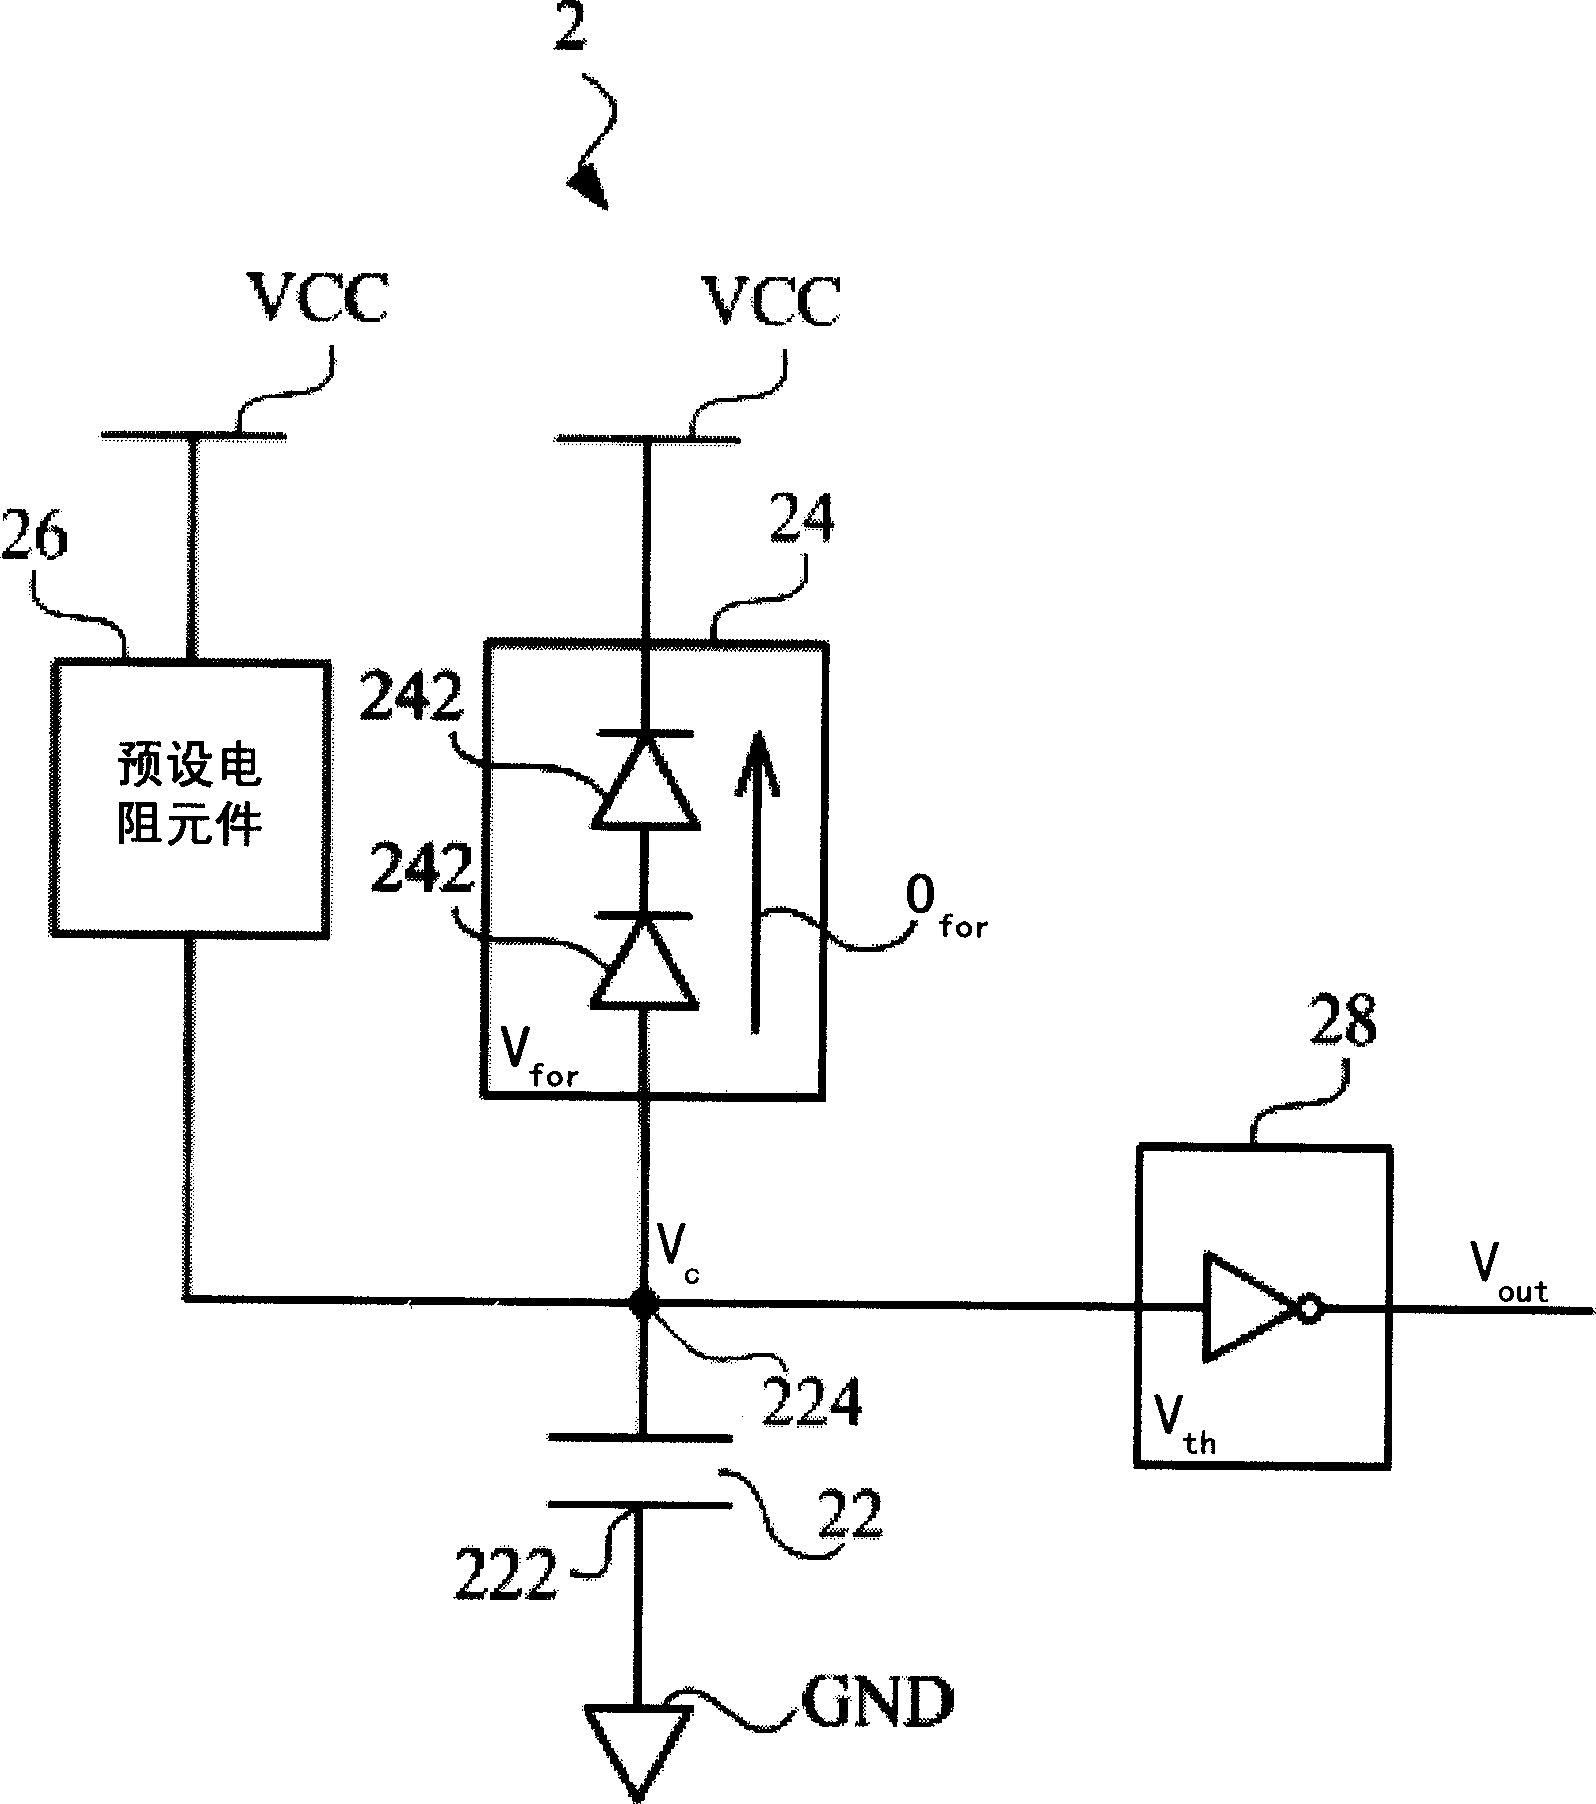 Instantaneous voltage detetion circuit